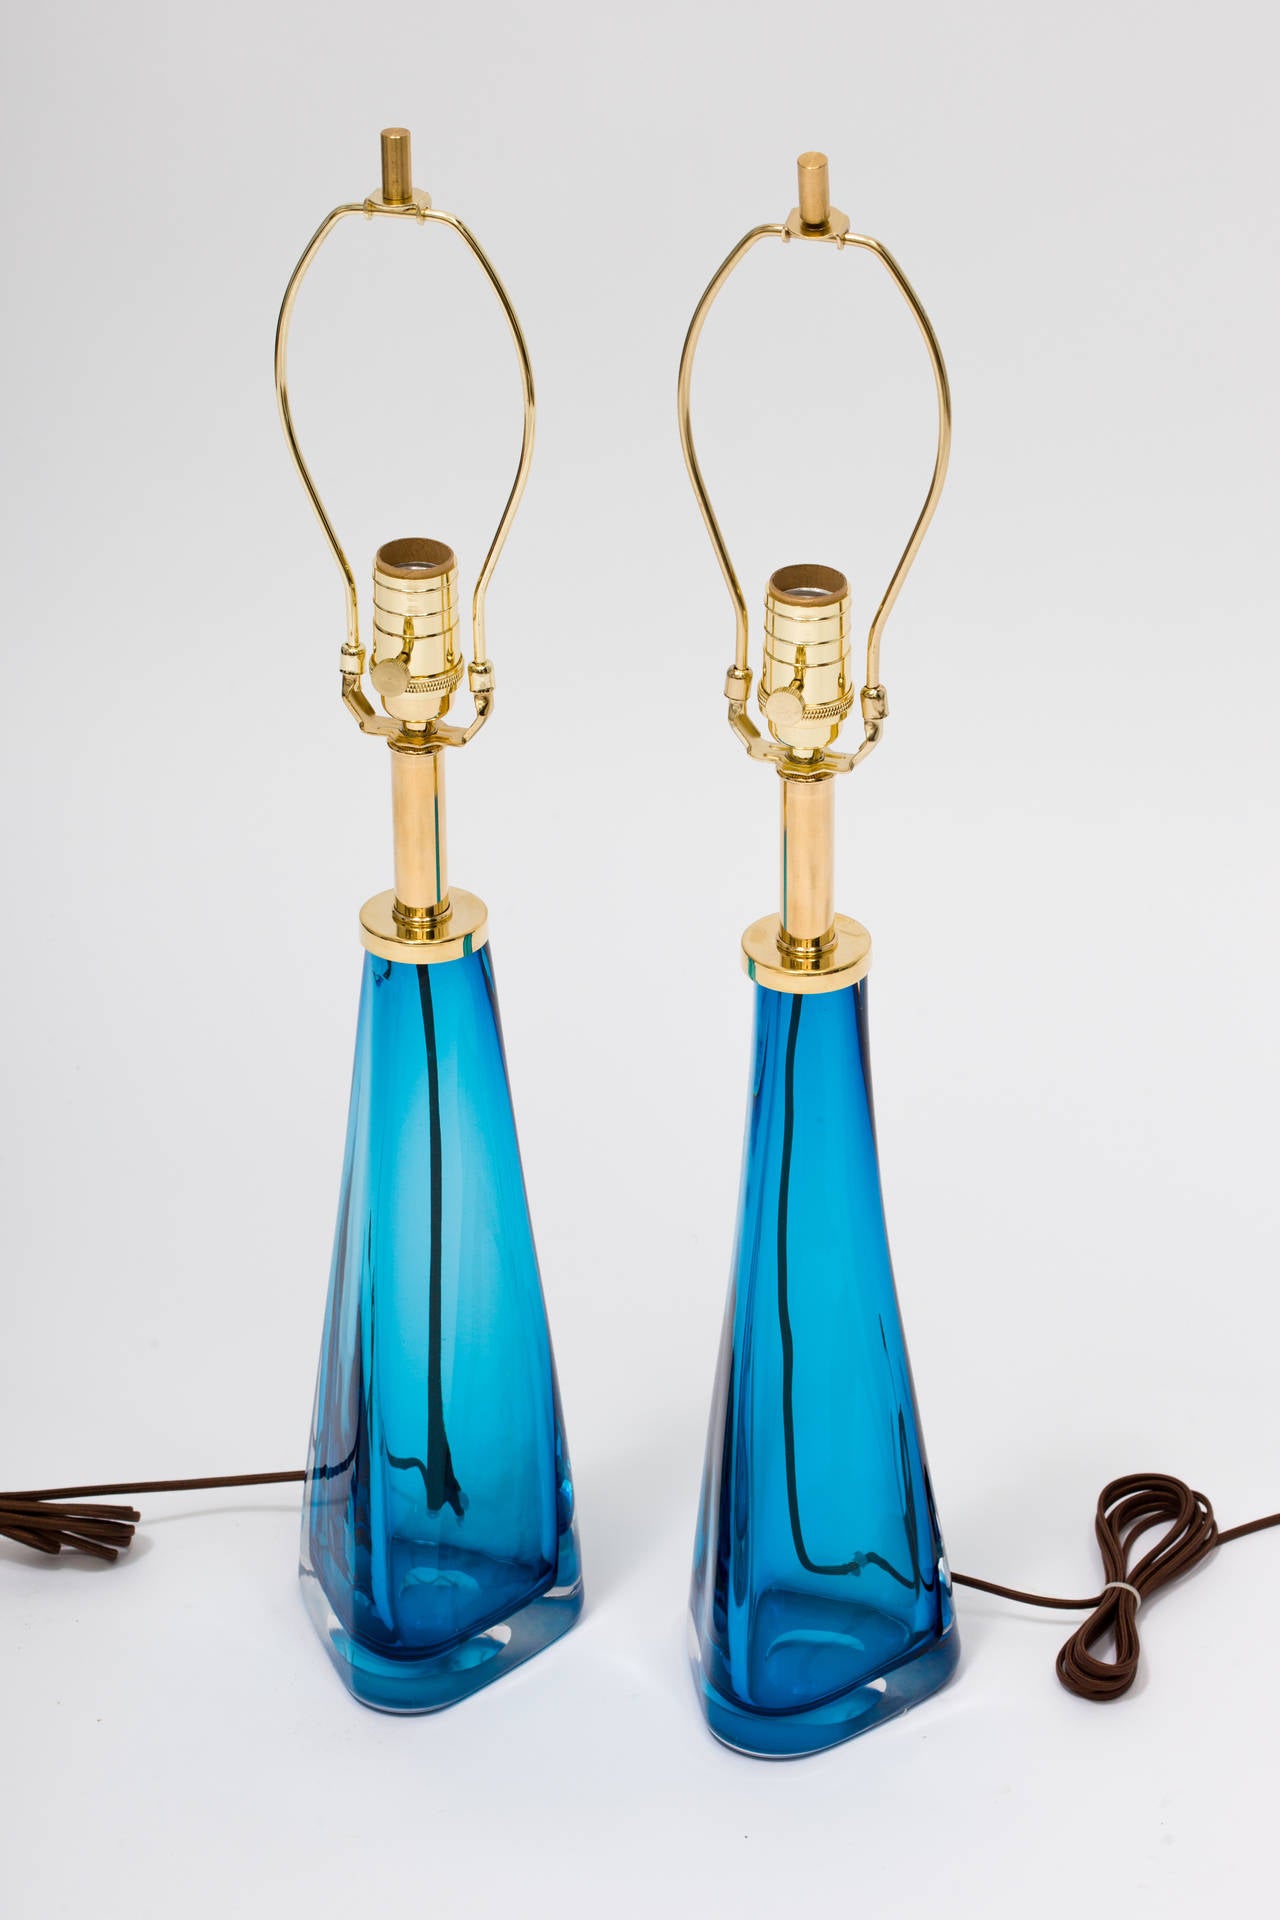 Ein Paar blaue Glaslampen mit dickem Klarglasgehäuse und Messingbeschlägen in der Art von Nils Landberg für Orrefors
Diese werden auf Bestellung gefertigt.